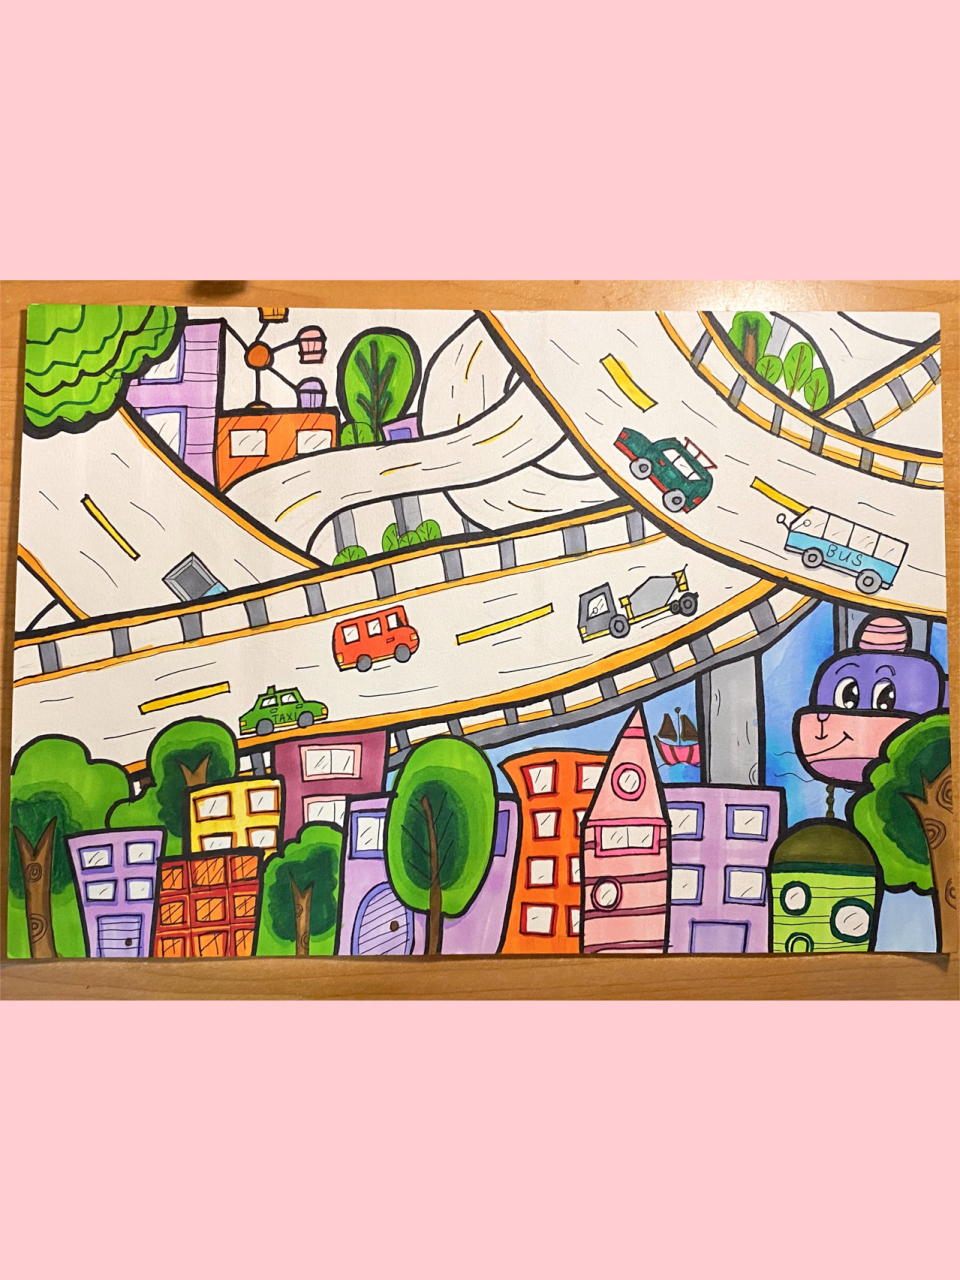 『交通主题画』热闹的马路 公路简笔画幼师主题画 随便画的 你们自己